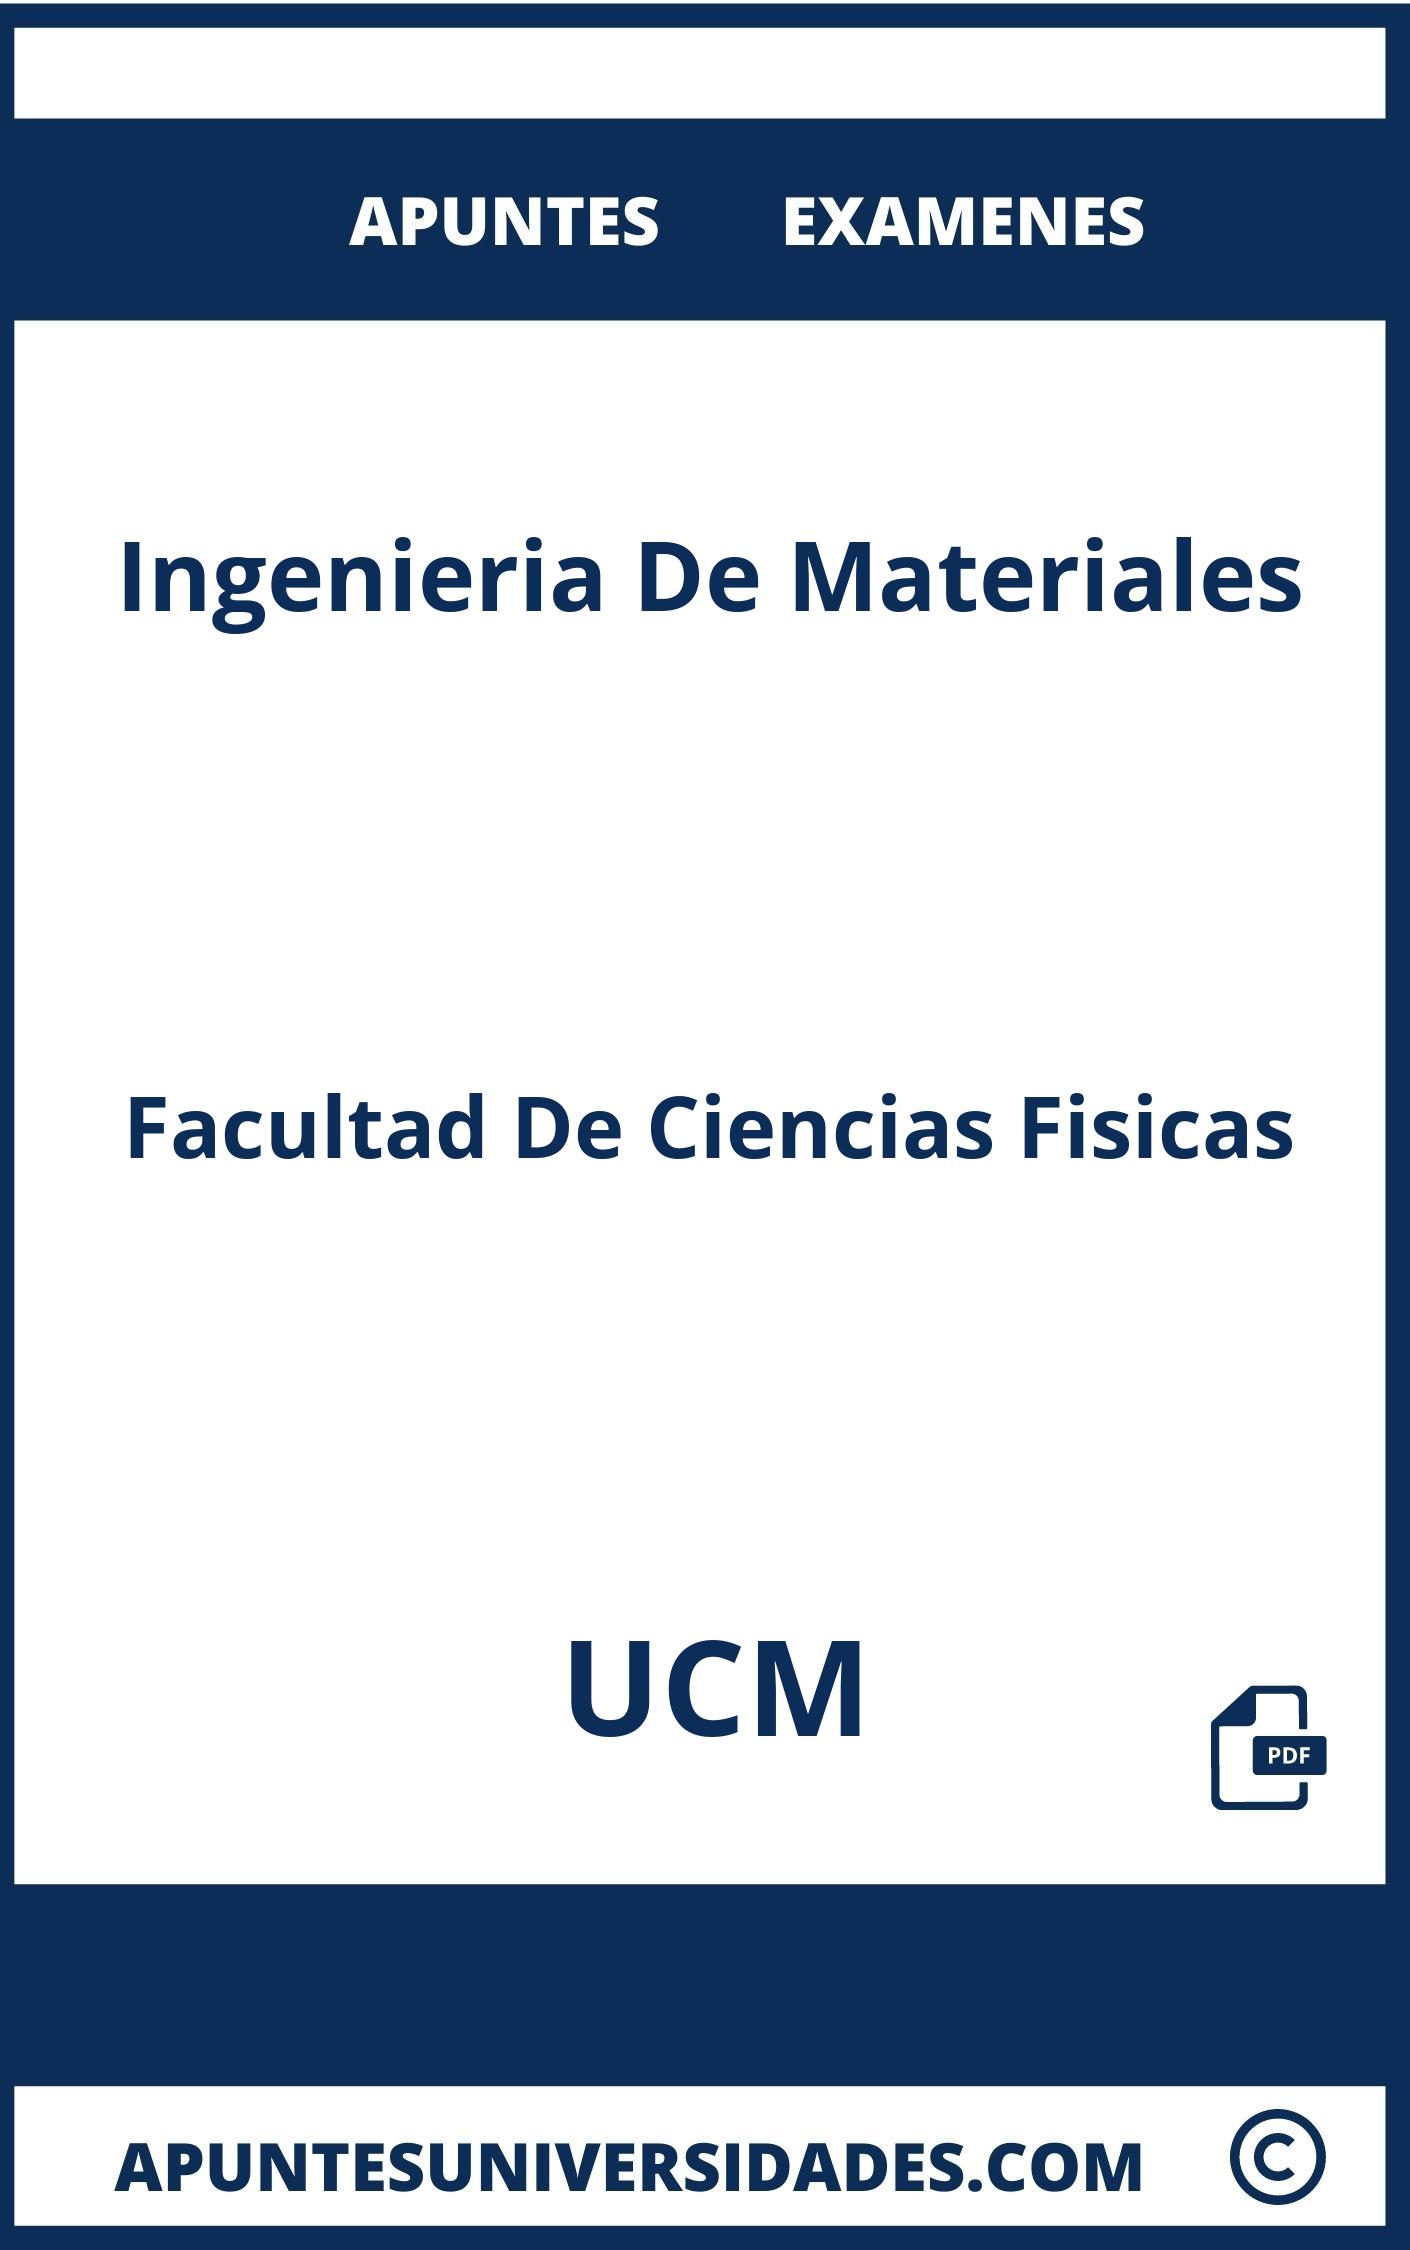 Examenes y Apuntes Ingenieria De Materiales UCM